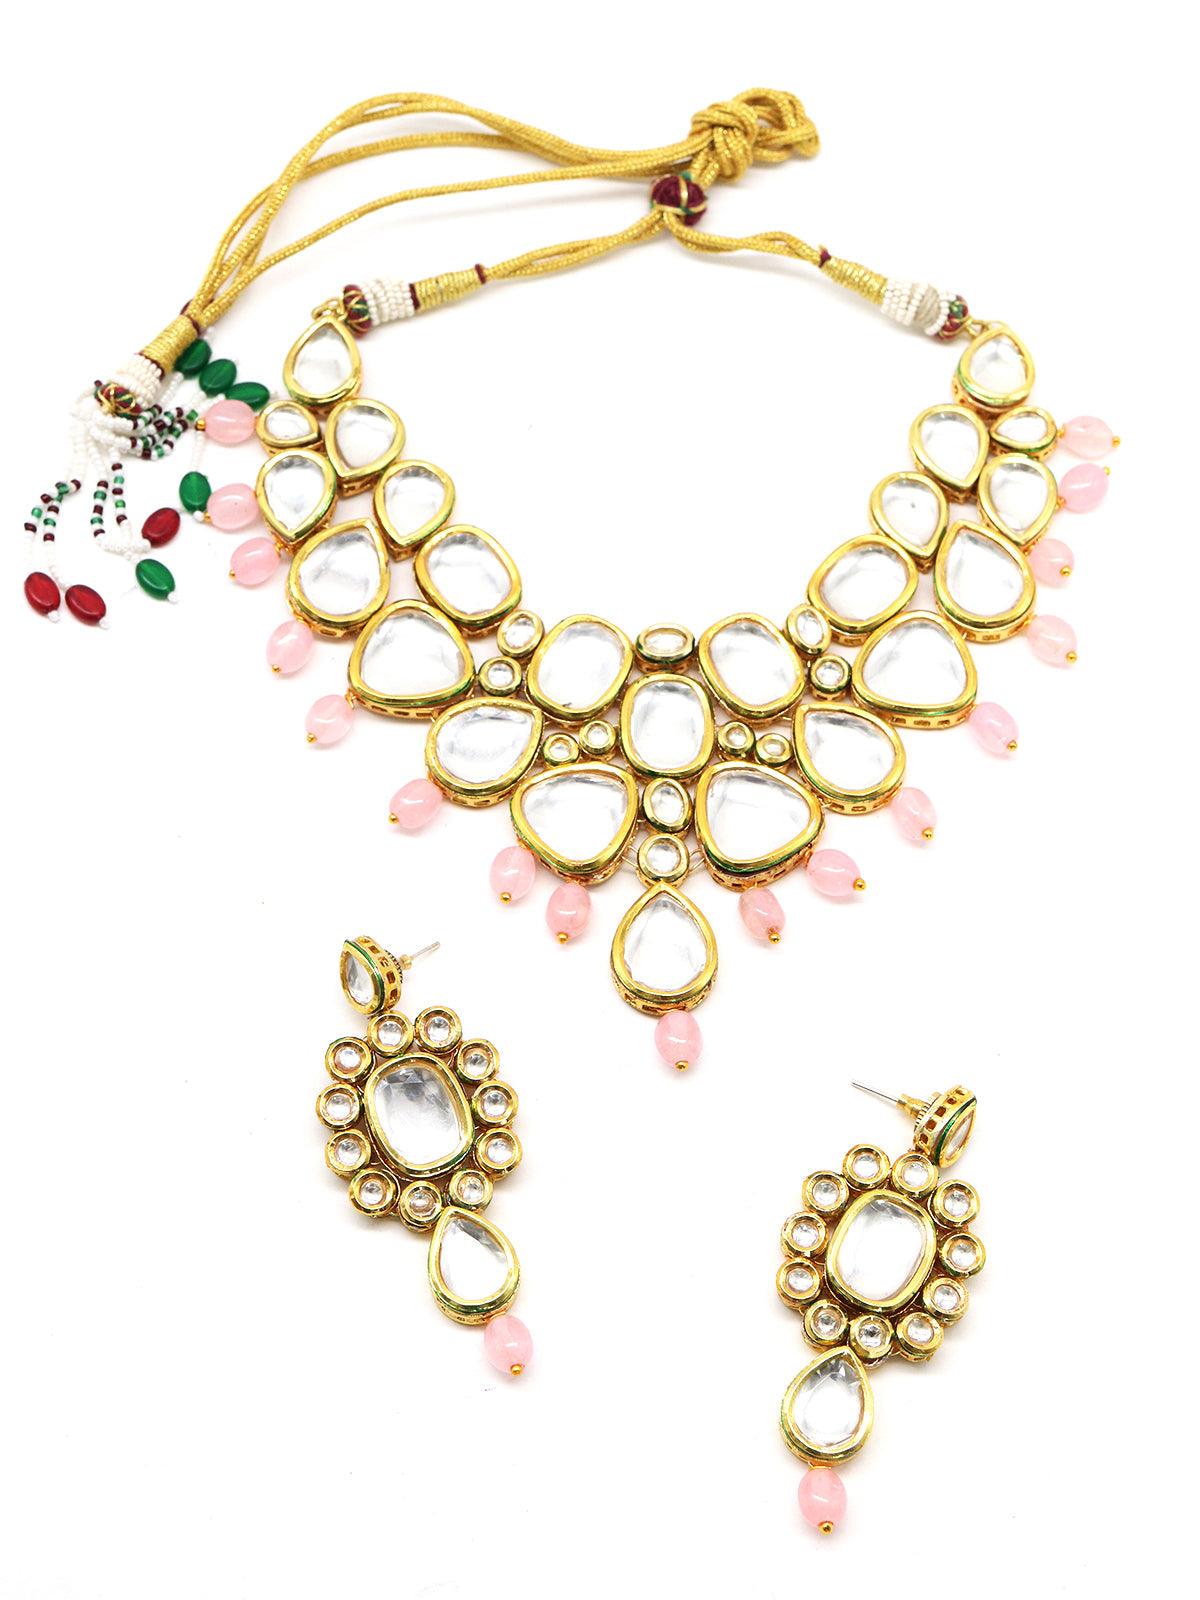 Women's Copy Of Marvelous Heavy Semiprecious Kundan & Enameled Necklace With Earrings! - Odette